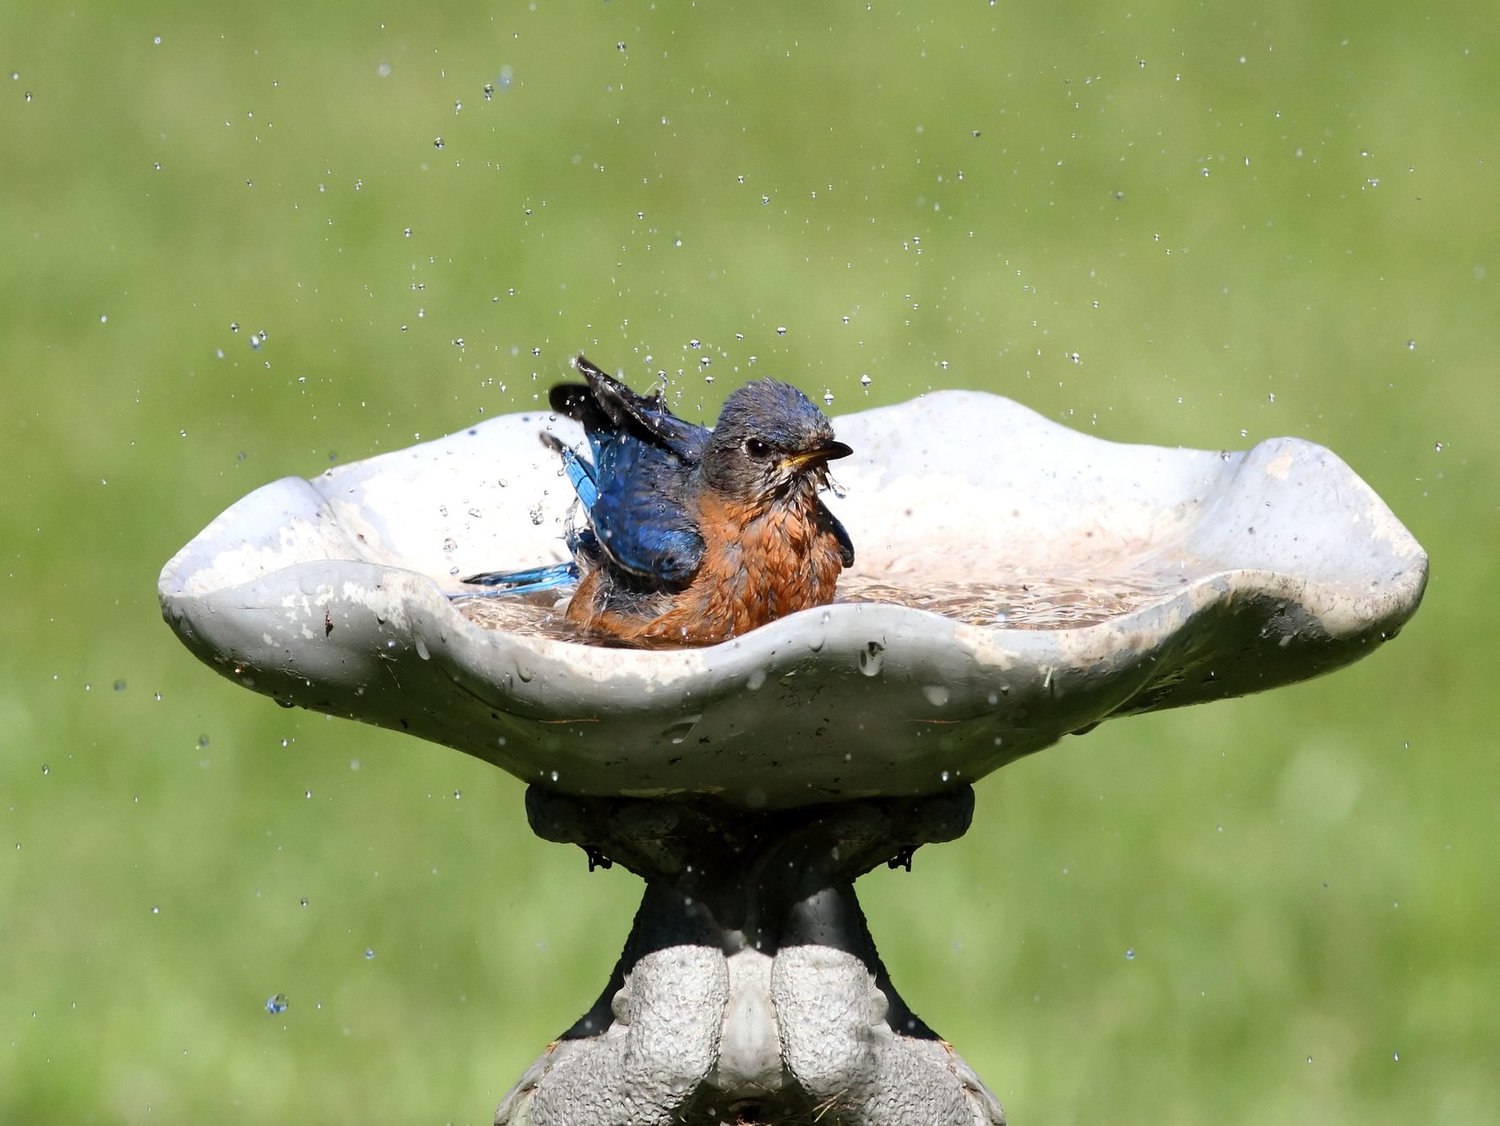 Eastern Bluebird in a bird bath